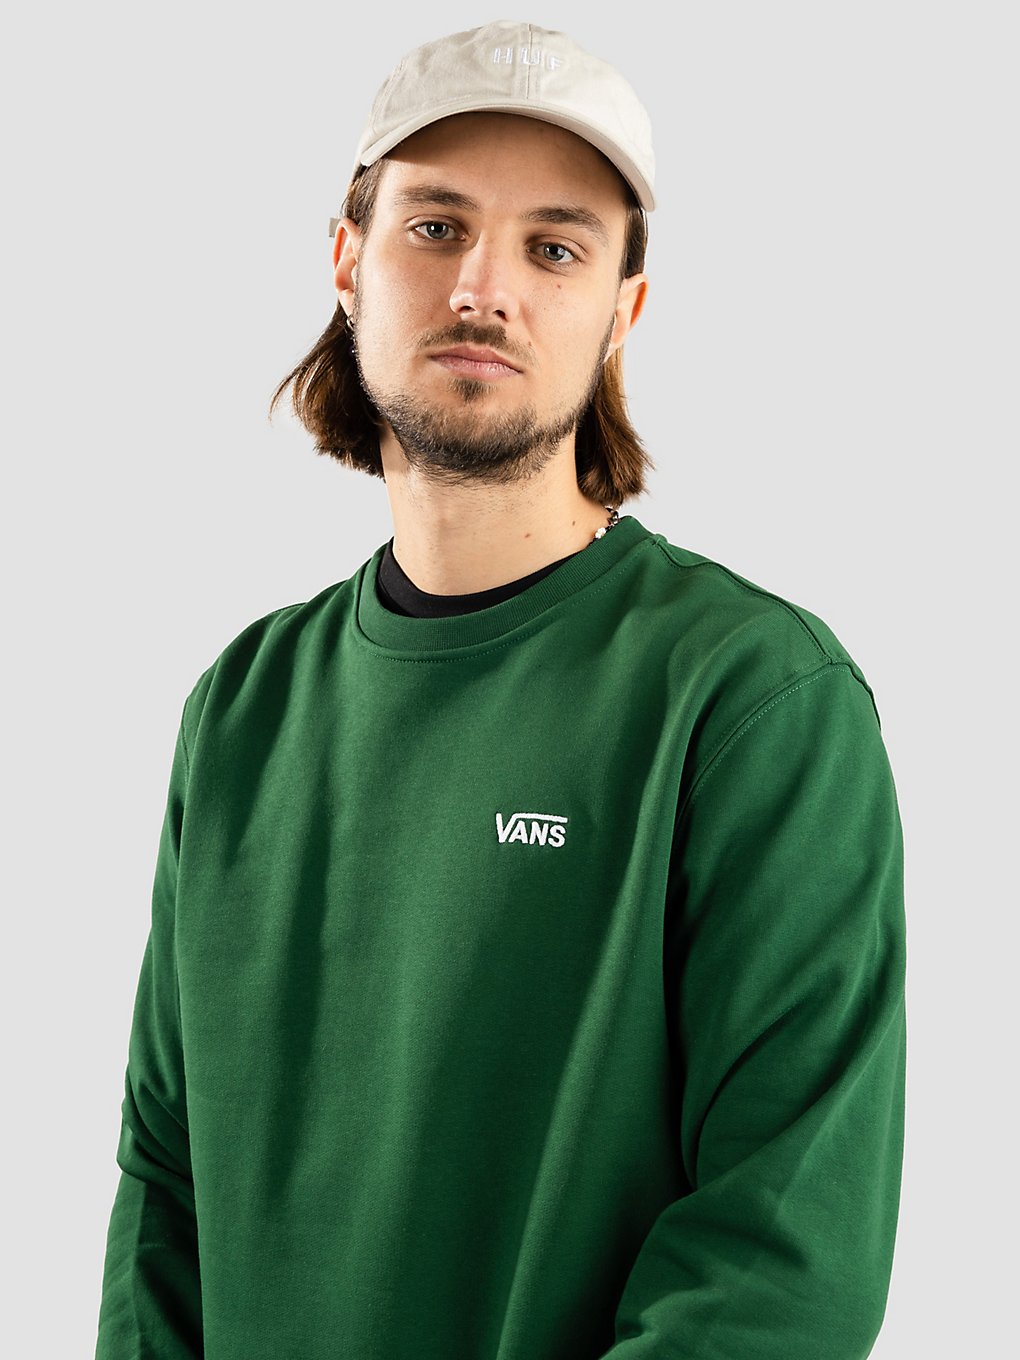 Vans Core Basic Crew Fleece Pullover eden kaufen